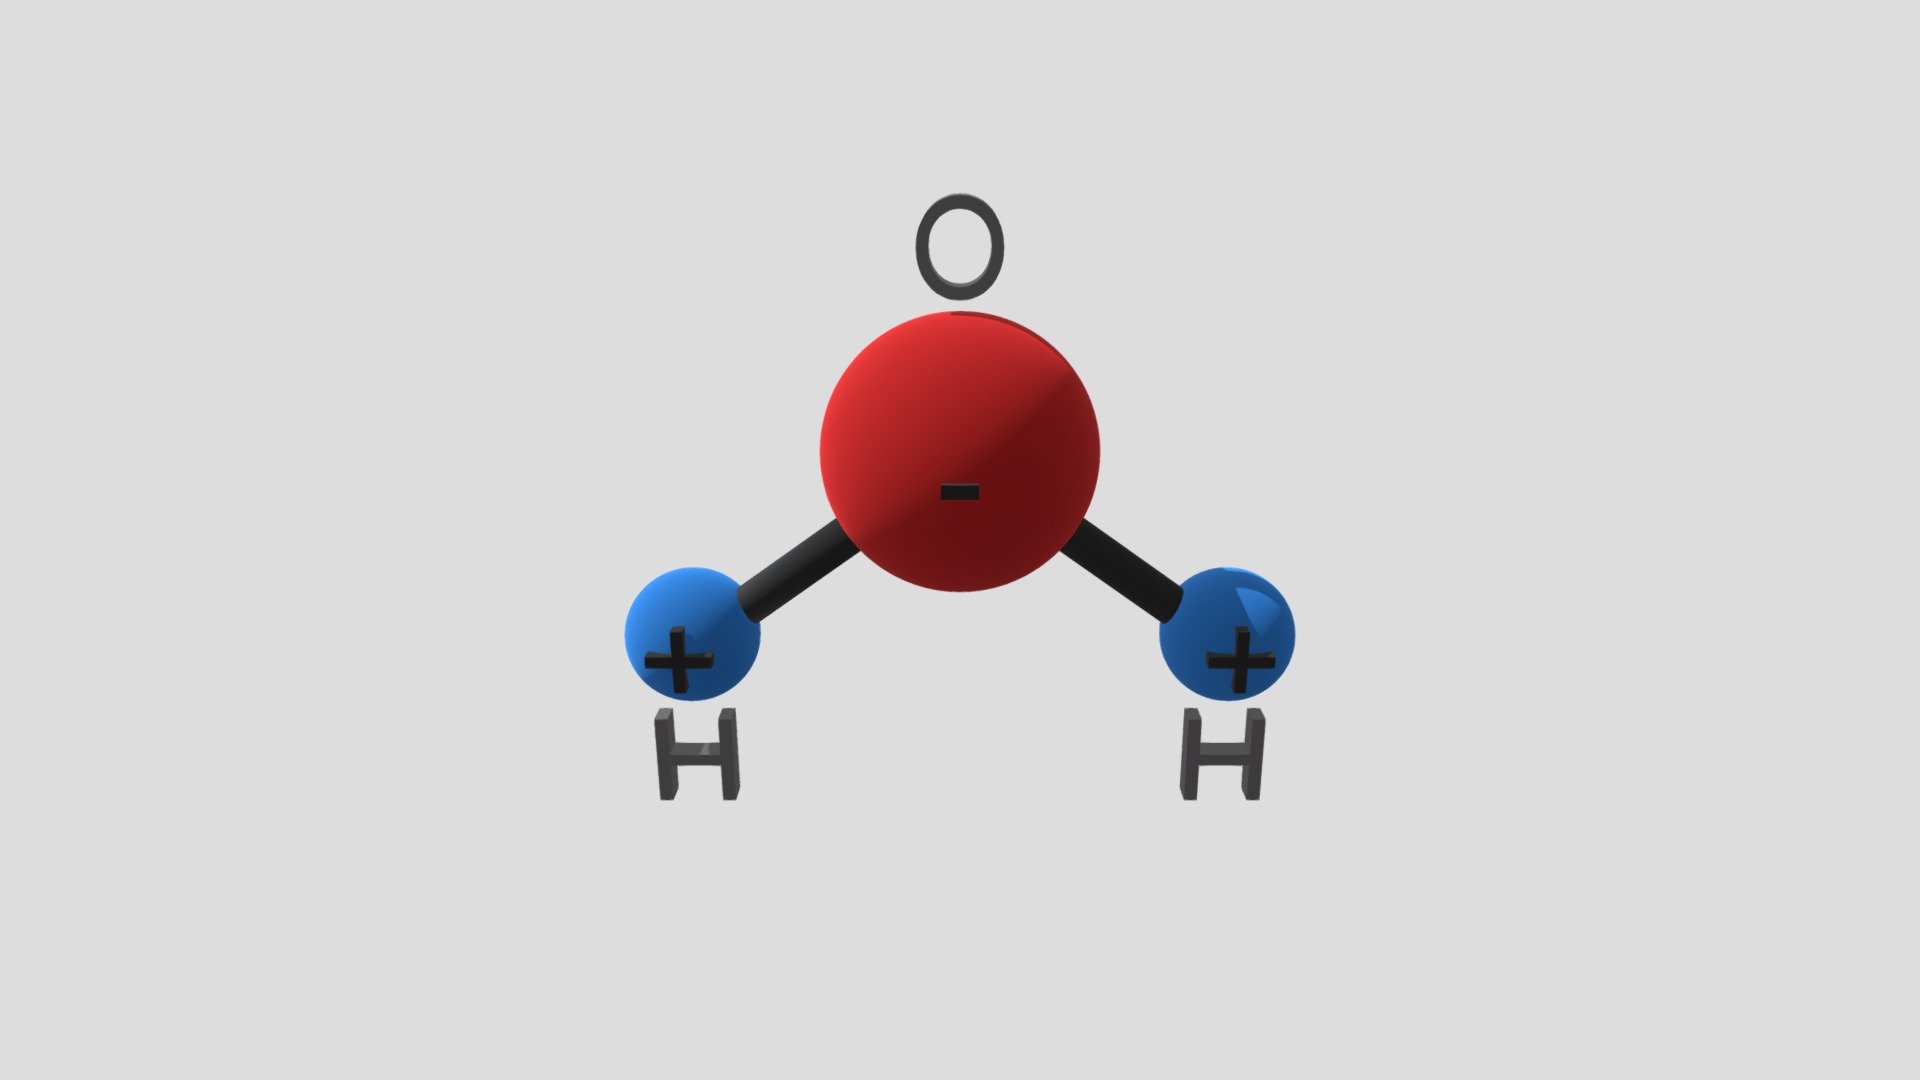 Физика молекулы воды. Молекула воды диполь. Модель молекулы воды. Химическая молекула воды. Изображение молекулы воды.